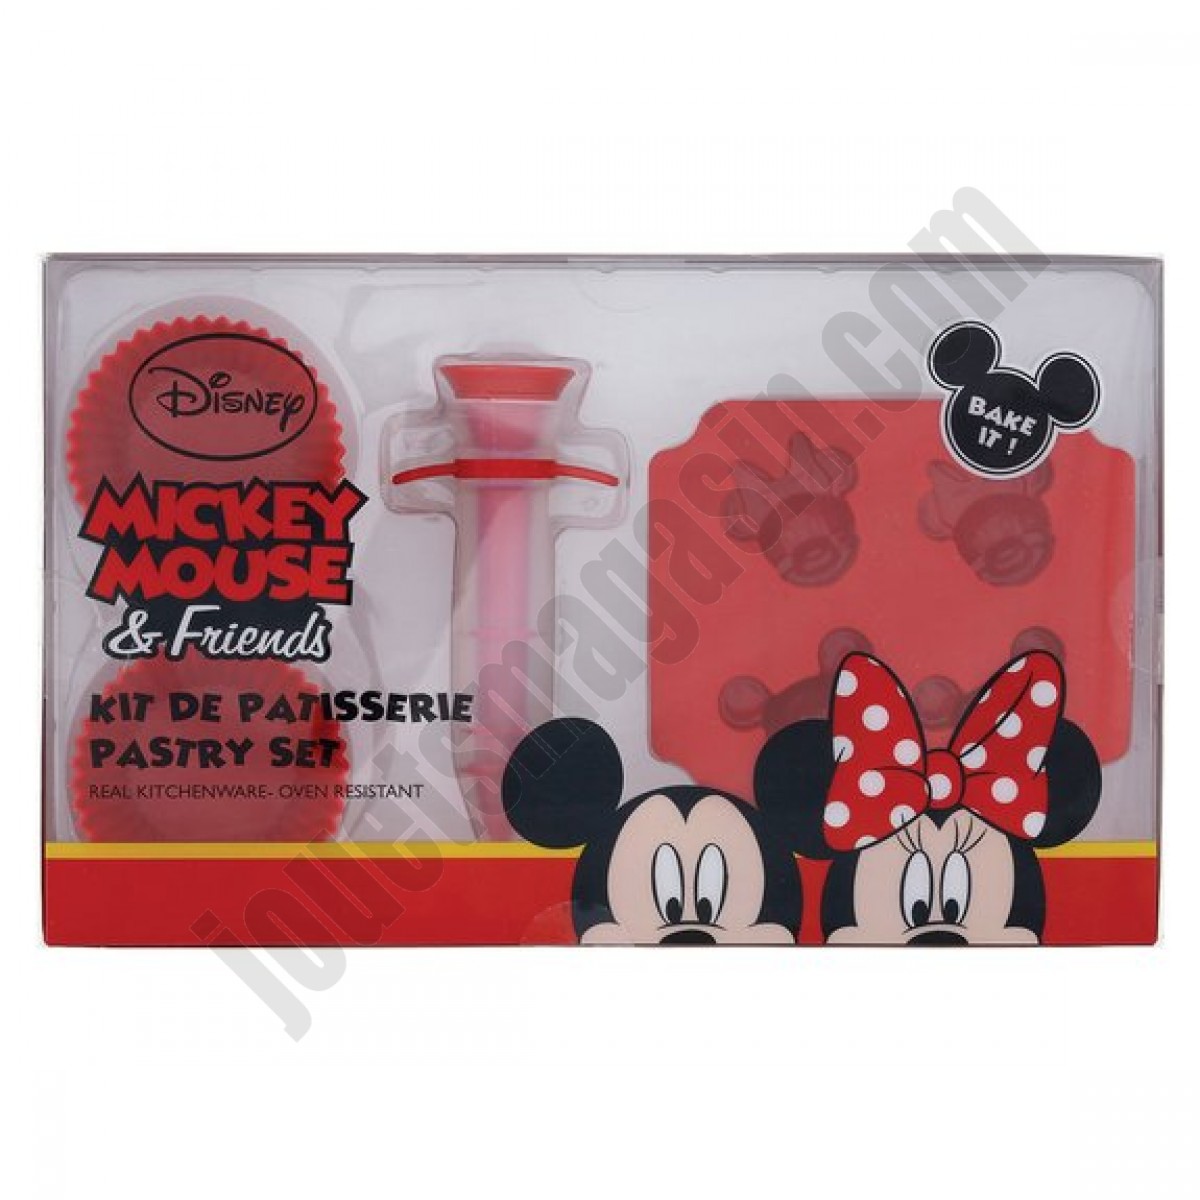 Kit patisserie Mickey Mouse & Friends En promotion - Kit patisserie Mickey Mouse & Friends En promotion